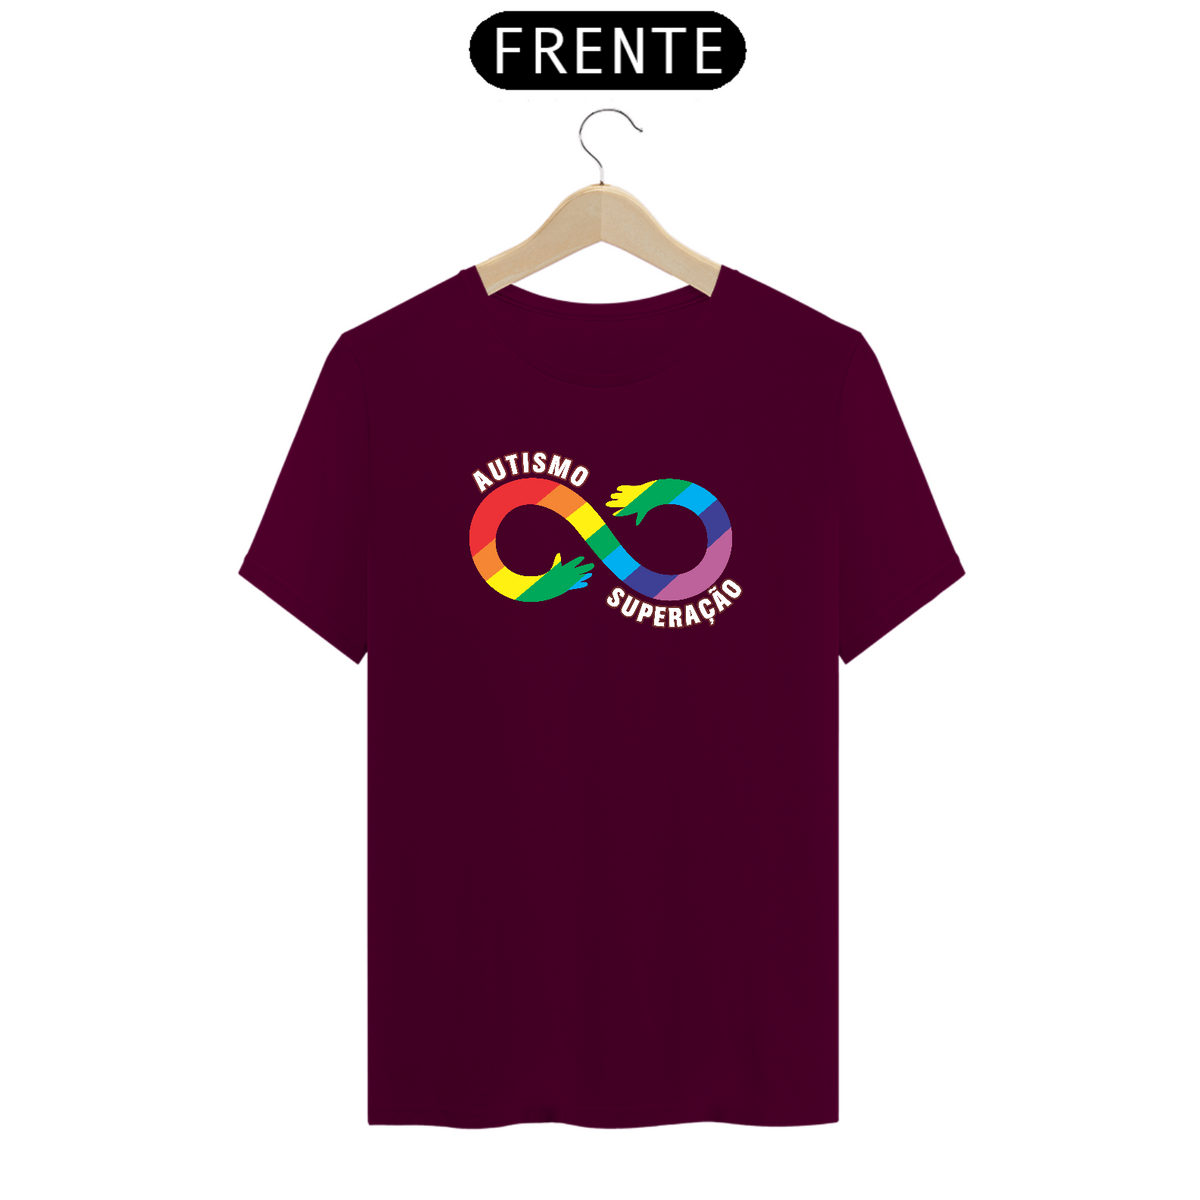 Nome do produto: T-shirt - autismo (autismo, superação)